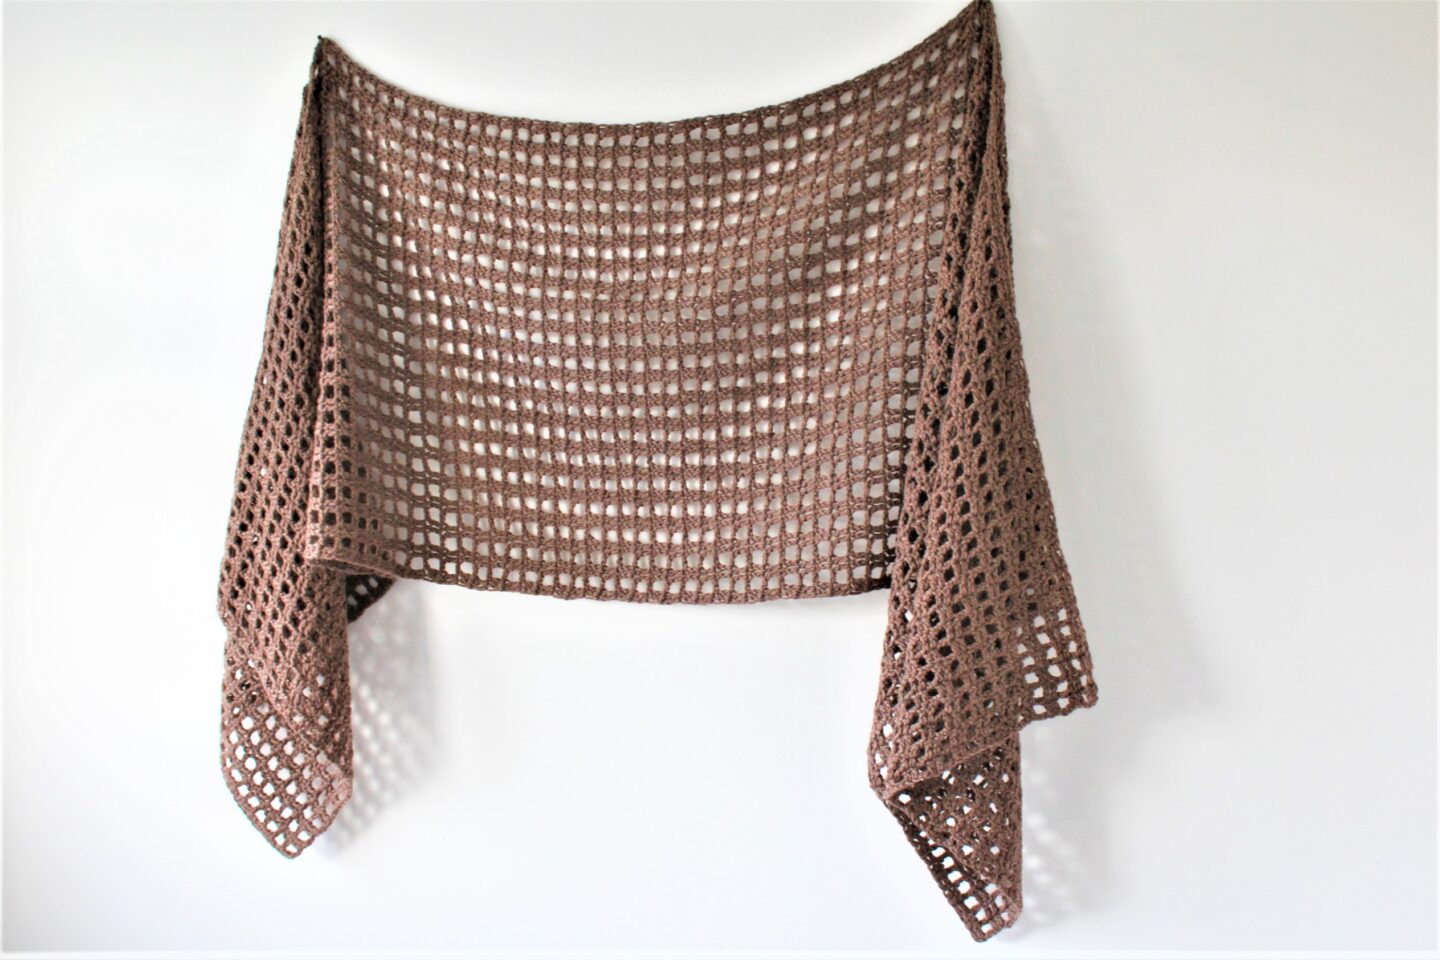 Penelope Sideways Shawl - Free Crochet Pattern